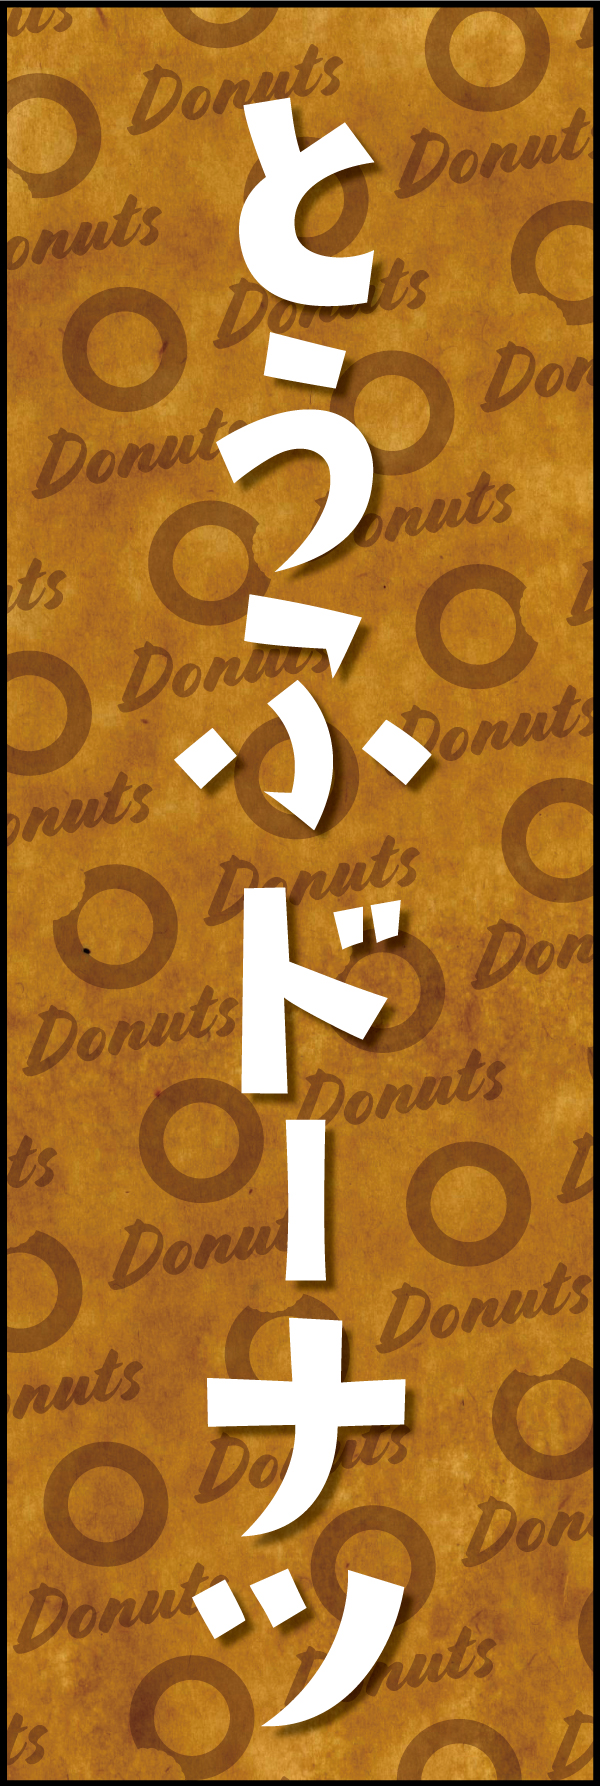 とうふドーナツ 190_01 「とうふドーナツ」ののぼりです。クラフト感ある包み紙のような背景デザインと文字で、ヘルシーでオーガニックな雰囲気を演出しました。（Y.M）